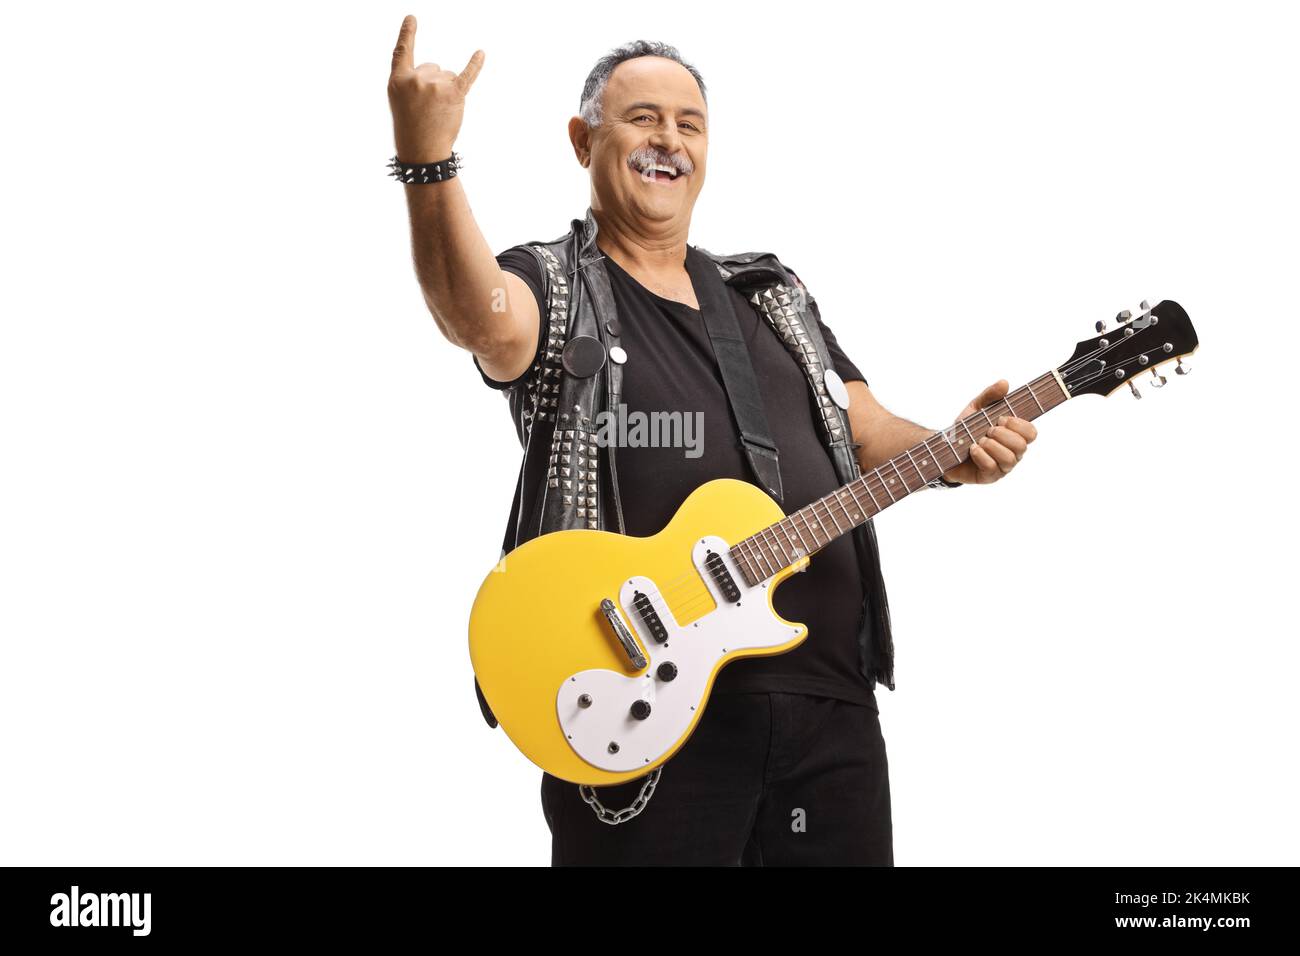 Chitarrista rock maturo con una chitarra elettrica che gestura un segno rock and roll isolato su sfondo bianco Foto Stock